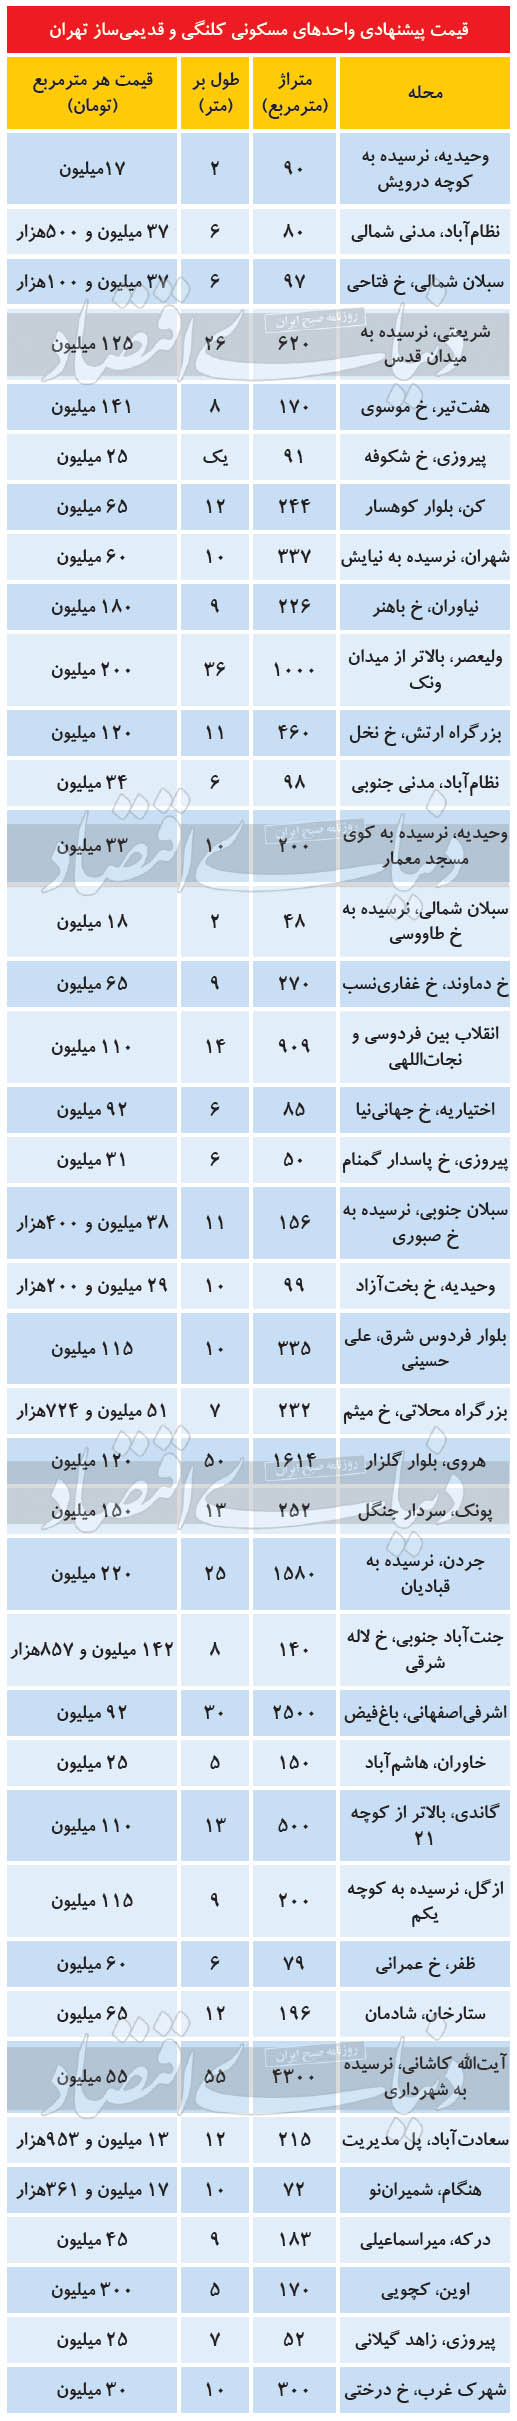 قیمت روز املاک کلنگی در تهران